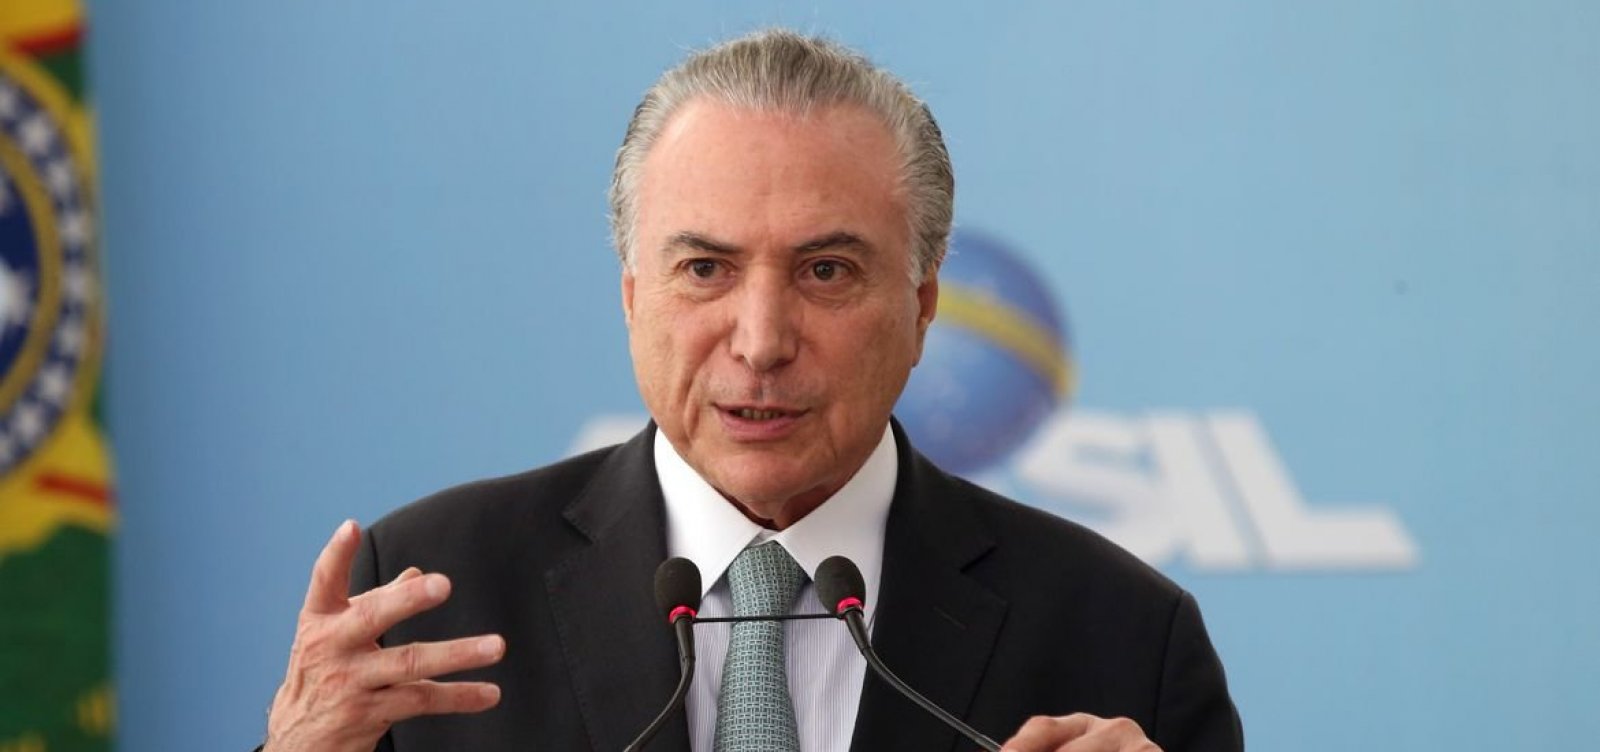 "Dilma é honestíssima, mas teve dificuldades em se relacionar", diz Temer sobre impeachment